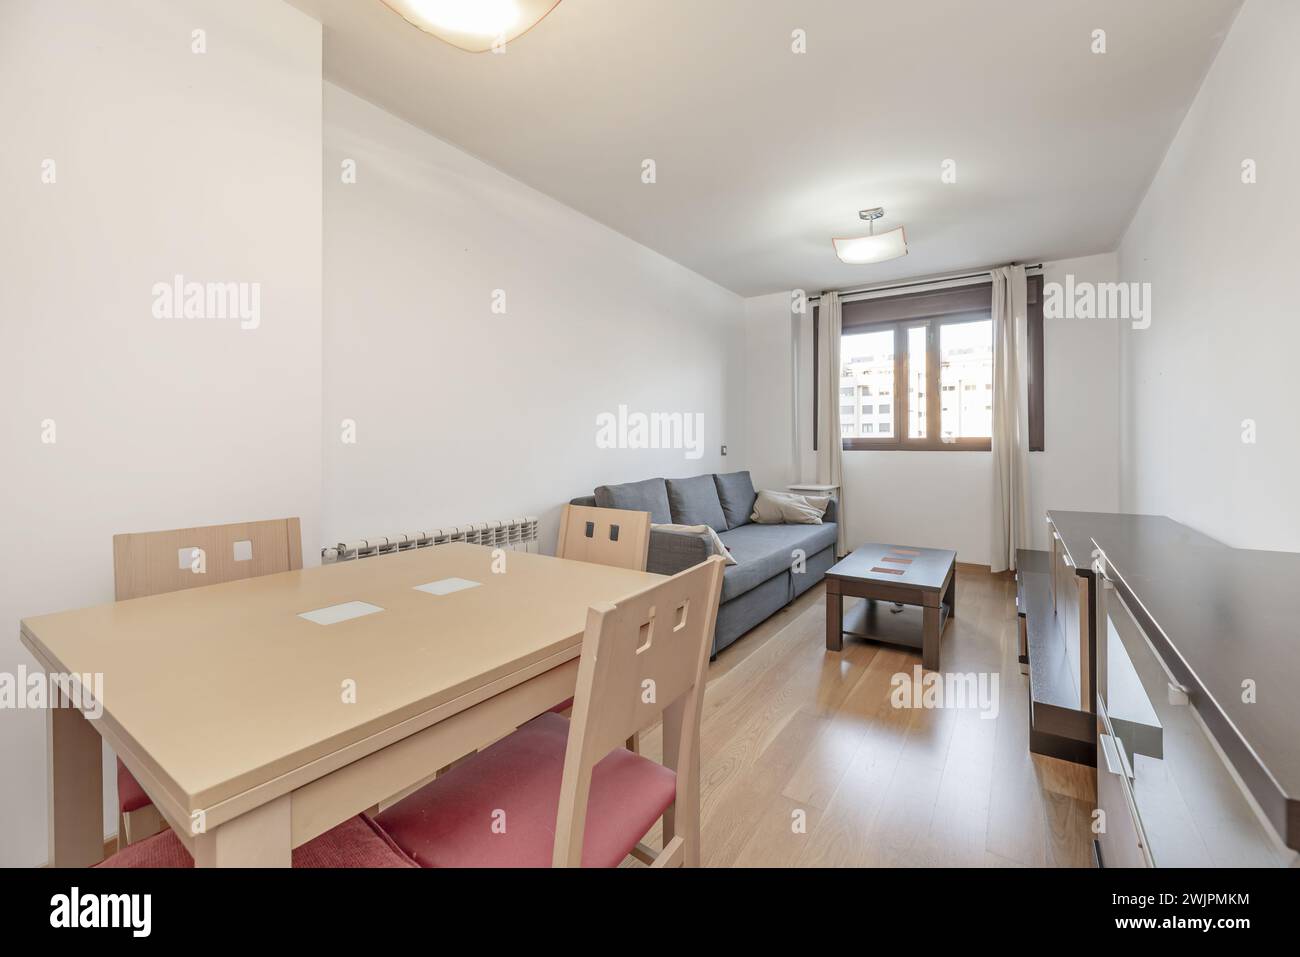 Kleines Wohnzimmer in einem Haus mit hellen Holzmöbeln mit dunklen Arbeitsflächen, einem buchenfarbenen Esstisch aus Holz mit passenden Stühlen und einem grauen Fabr Stockfoto